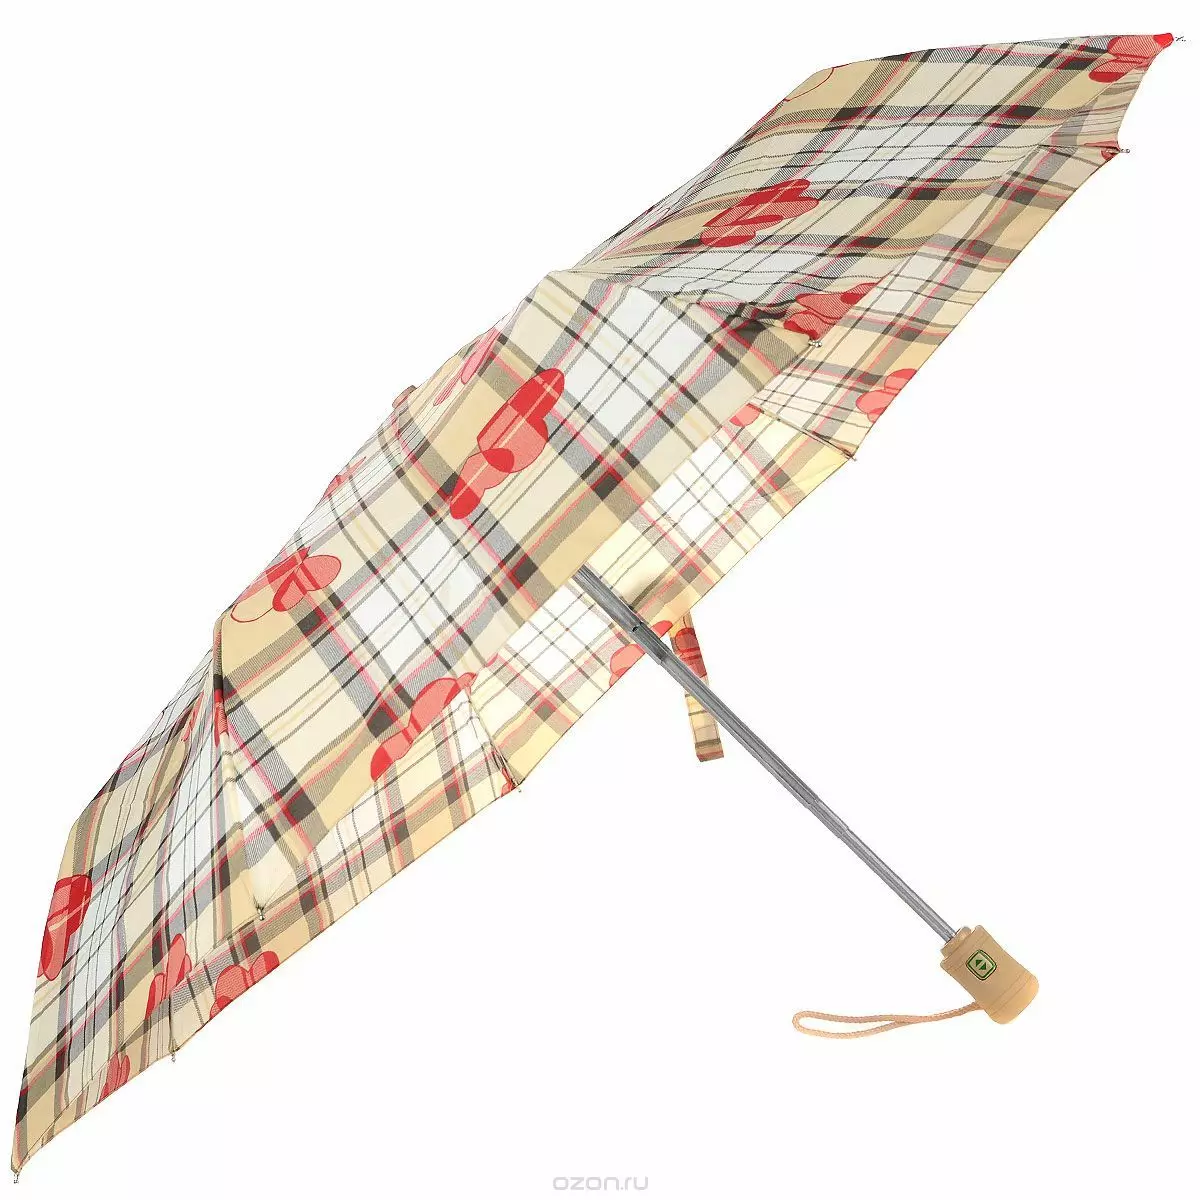 Fulton Umbrellas (53 fotos): skaaimerken fan modellen en resinsjes oer Umbrellas 15229_30